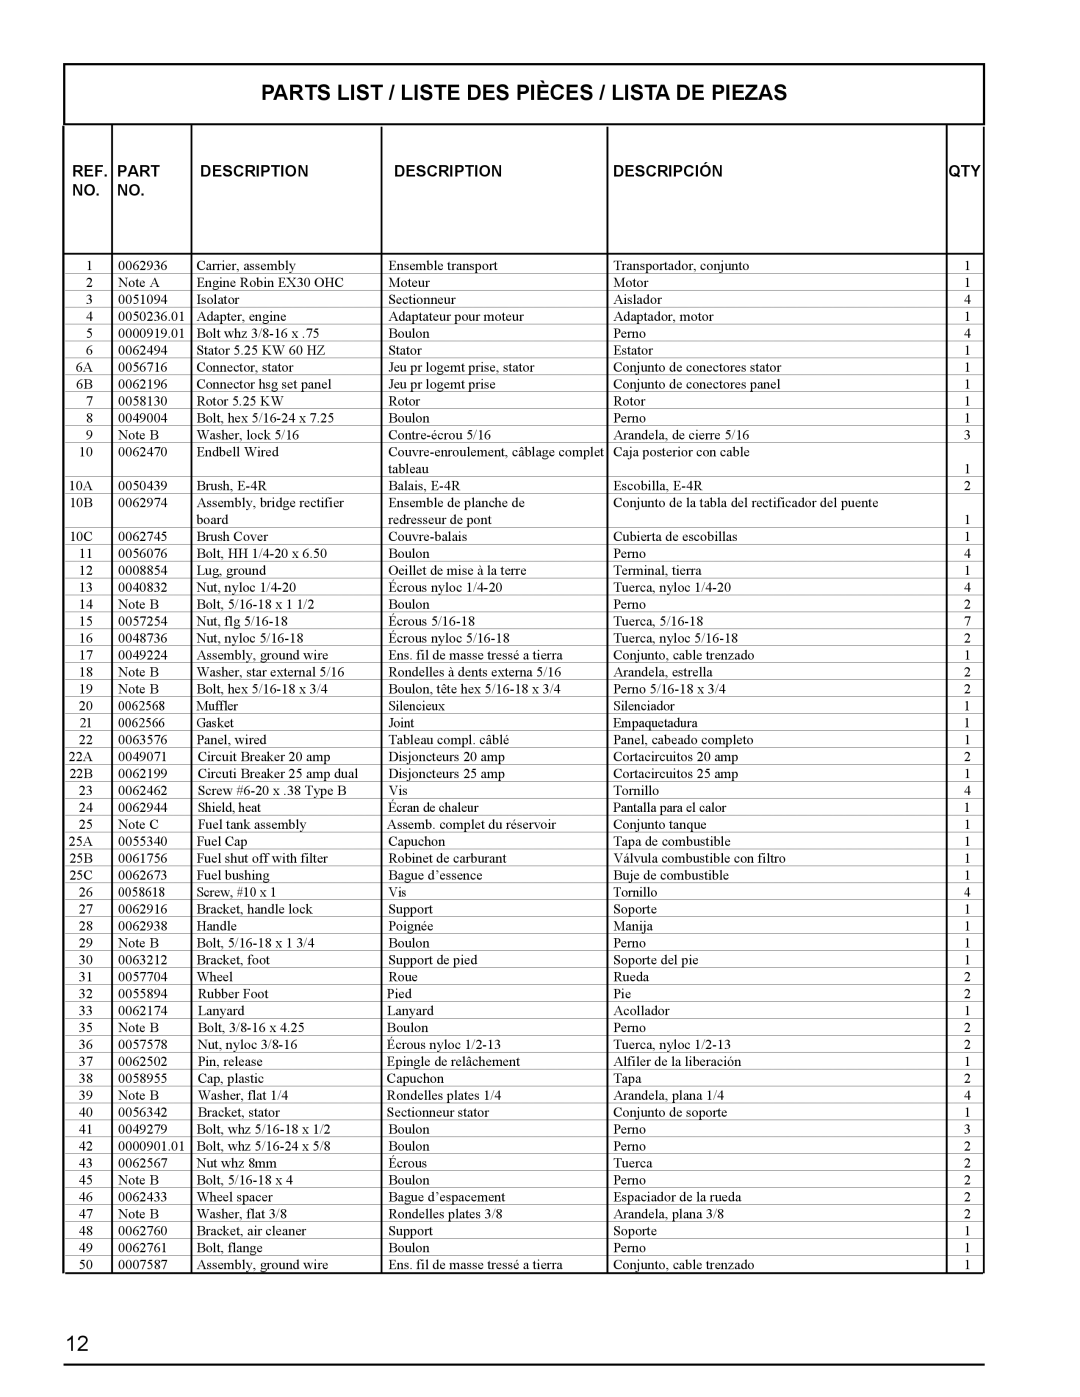 Powermate PMC435251 manual Parts List / Liste Des Pièces / Lista De Piezas, Description, Descripción 